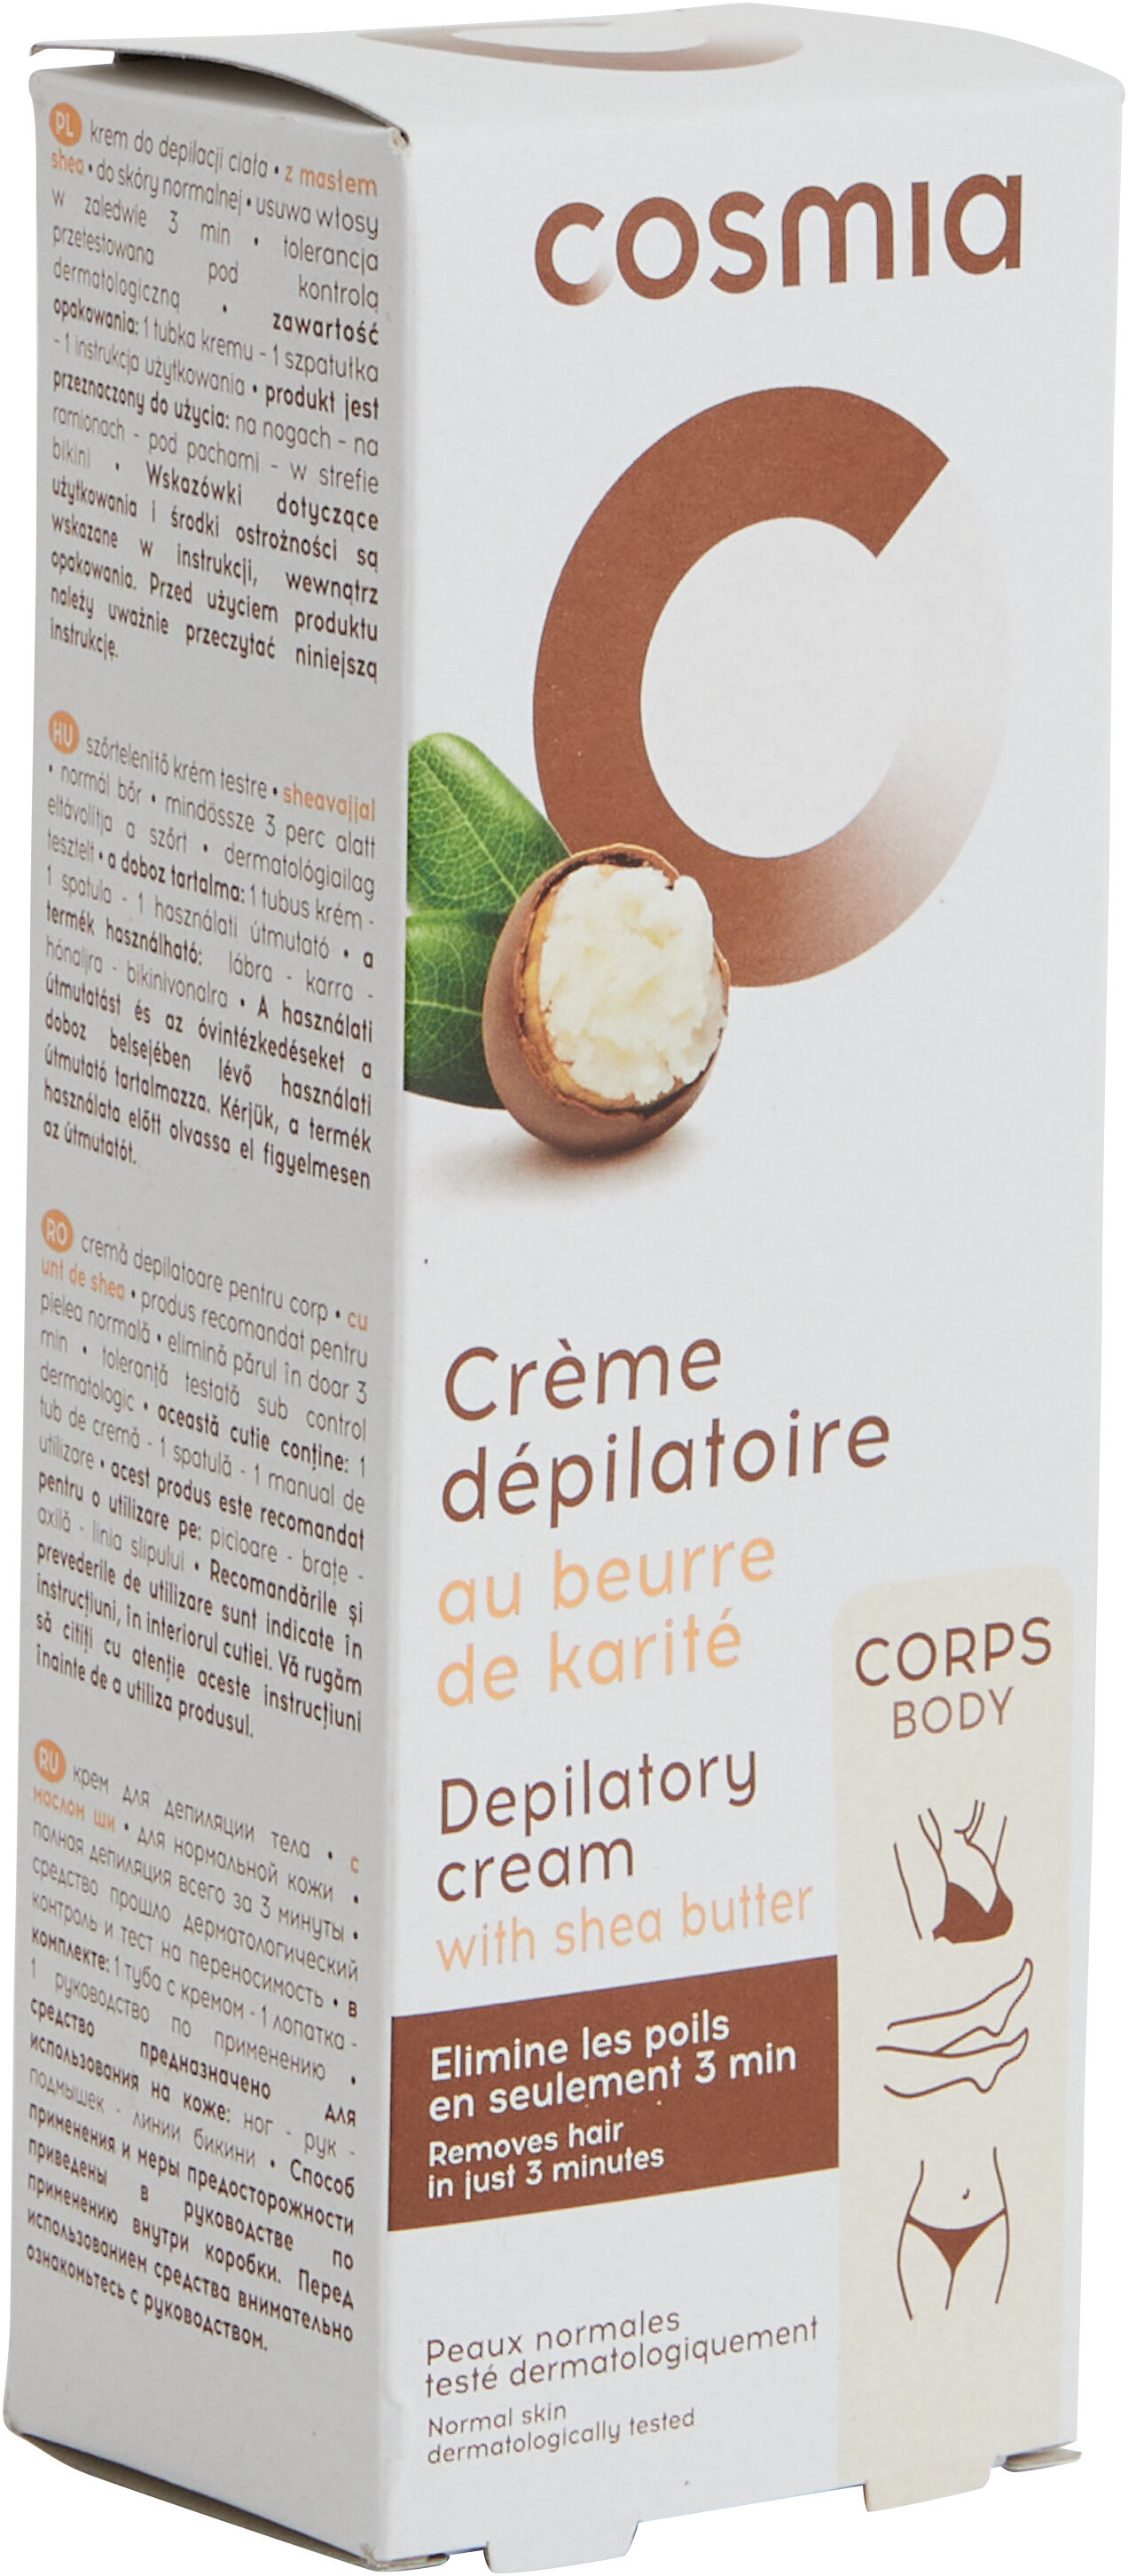 Crème dépilatoire au beurre de karité - Produit - fr